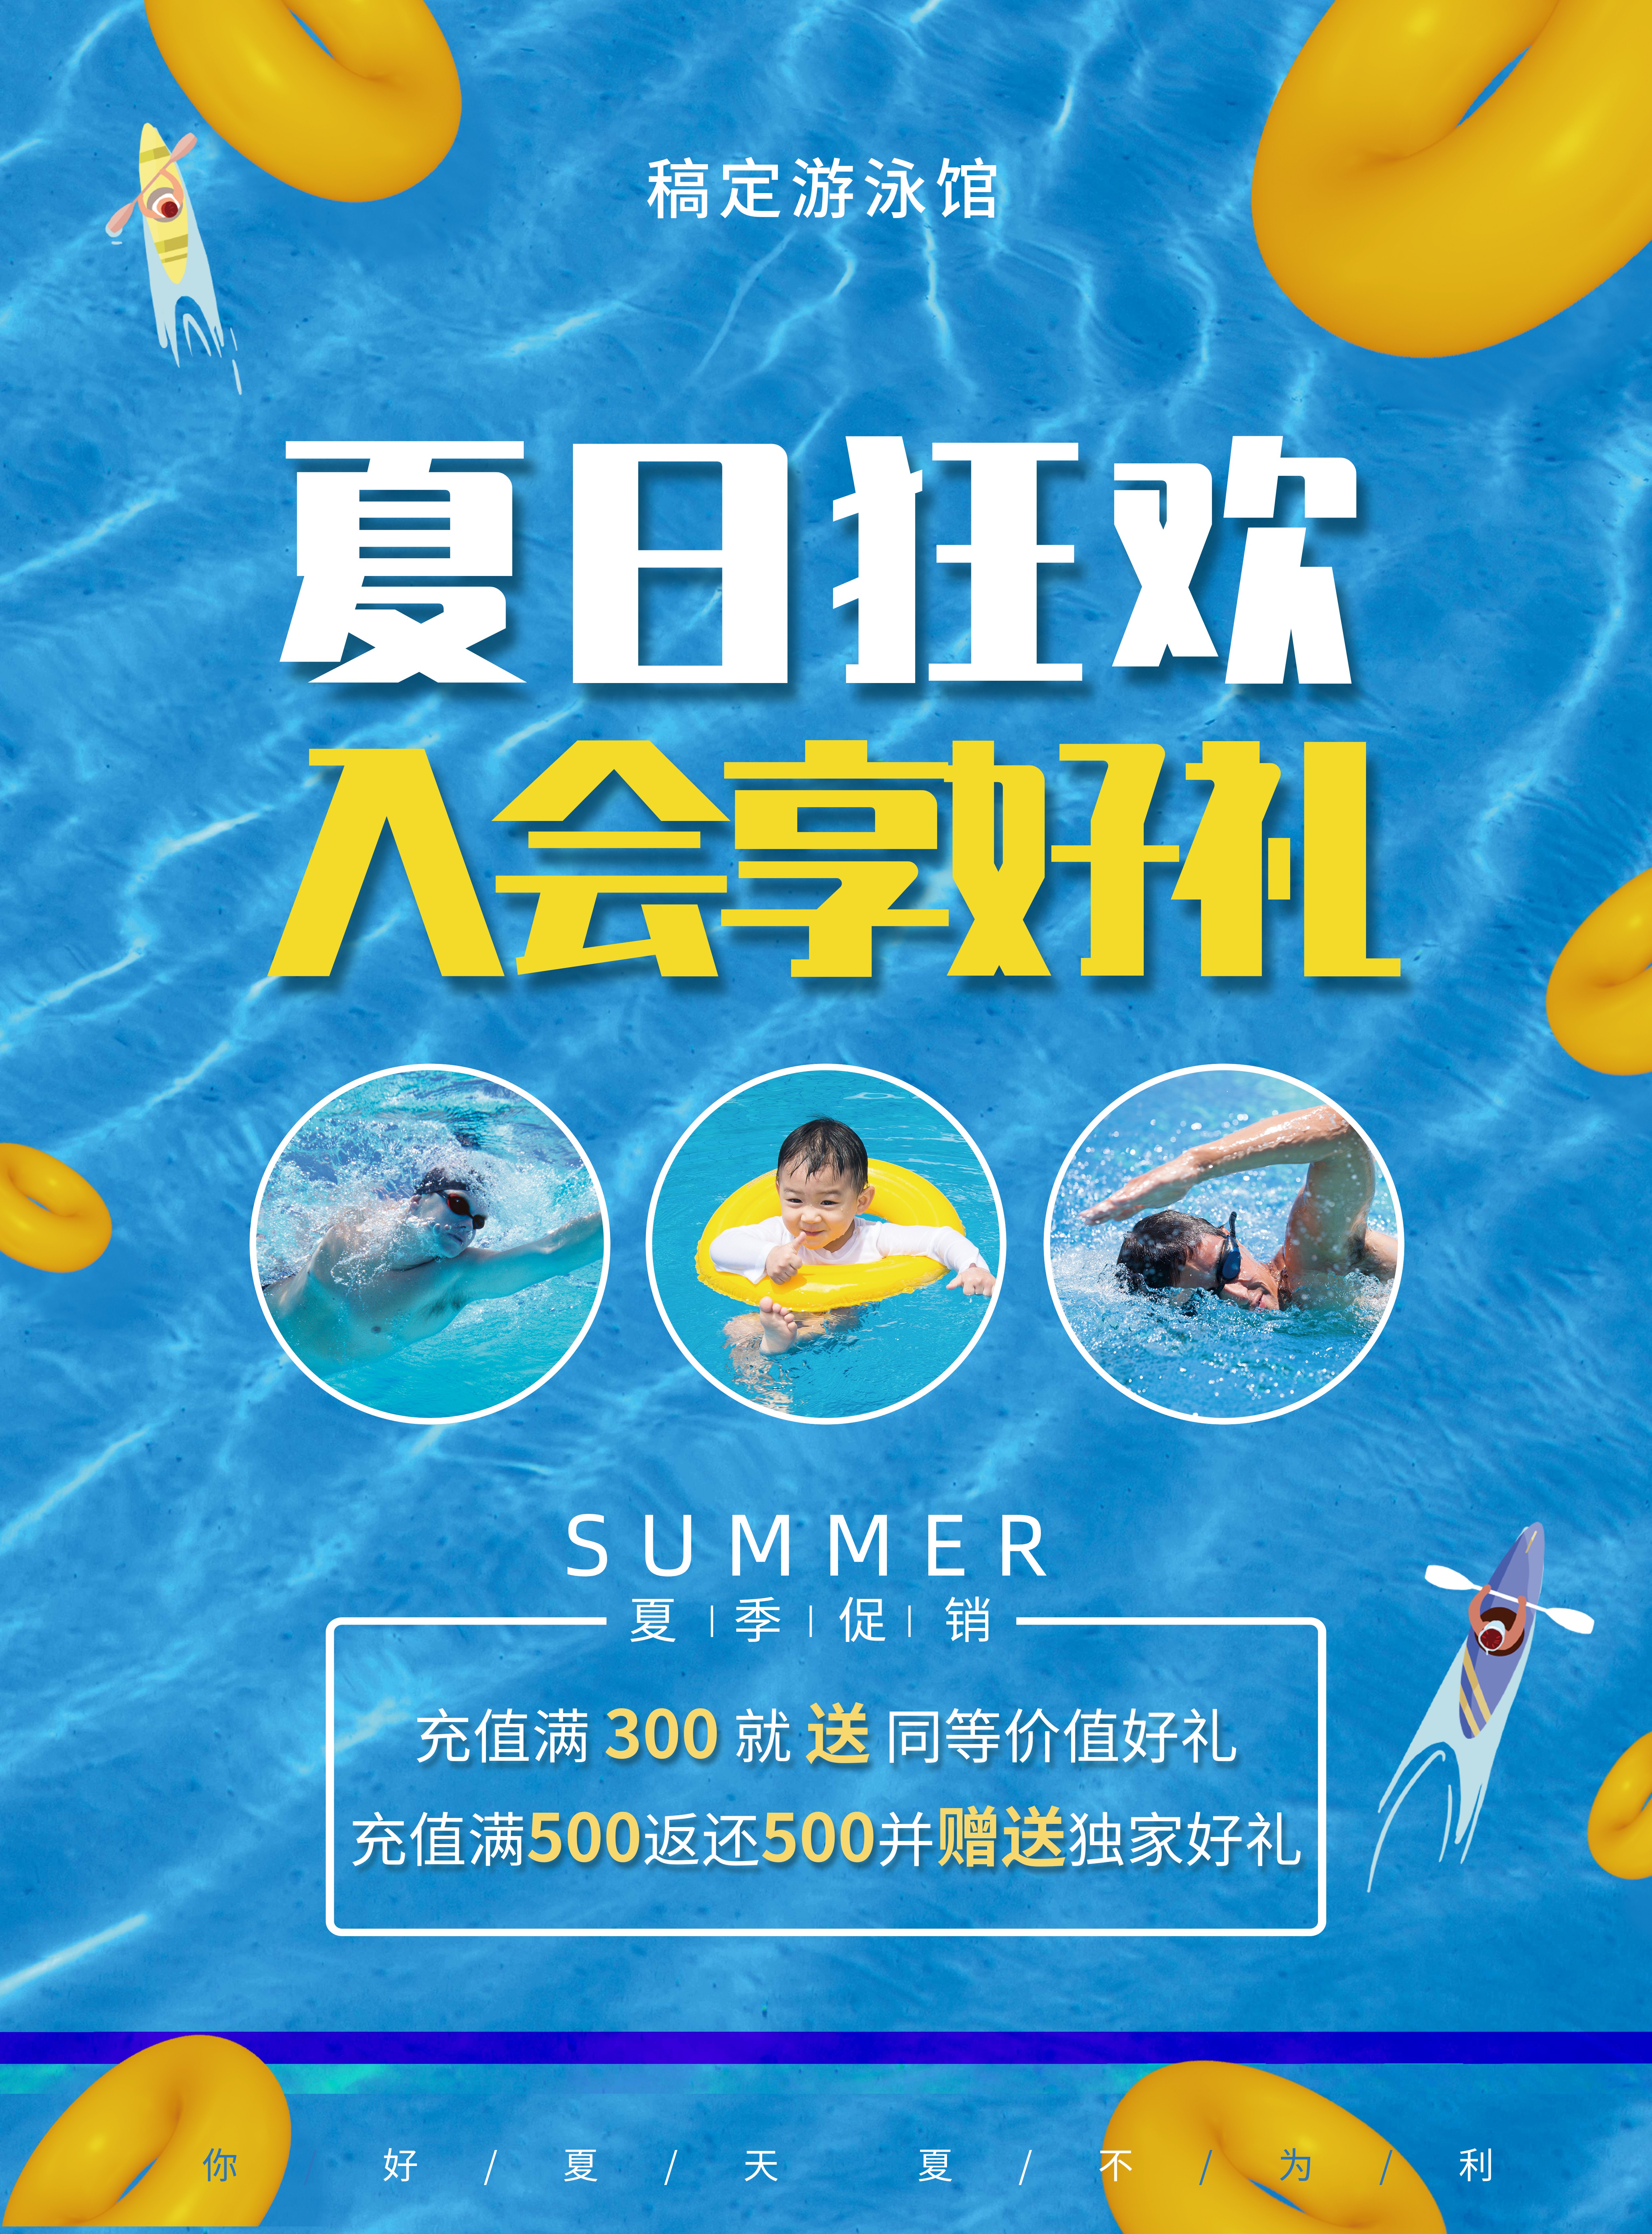 游泳馆夏天卡通游泳培训促销张贴海报